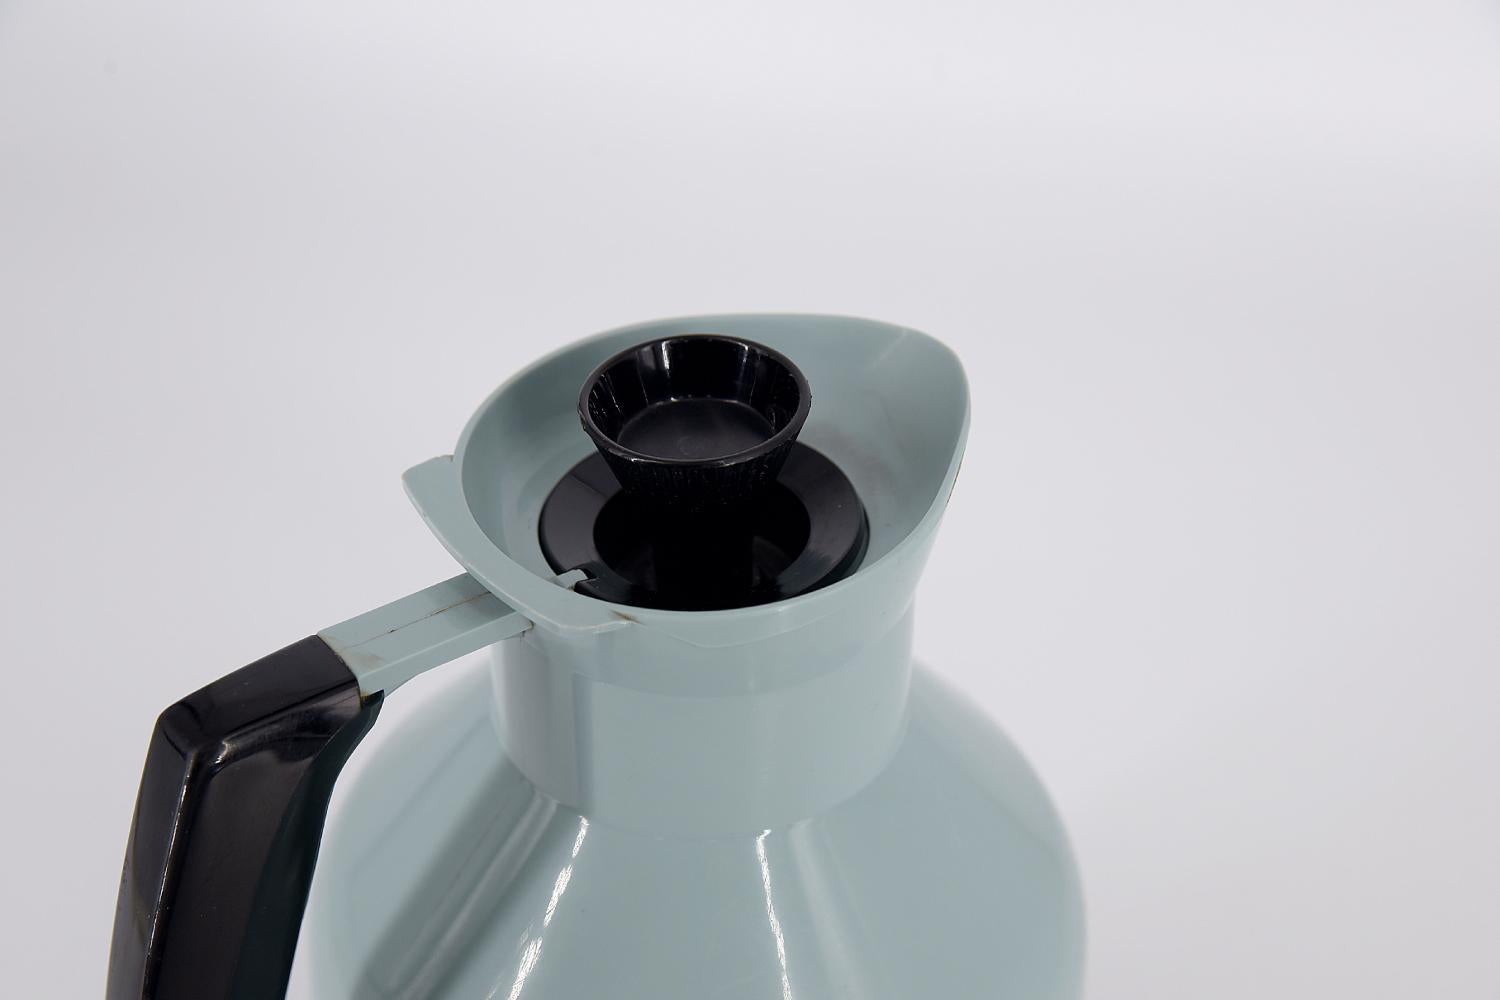 Cette cruche thermique a été conçue par G. Rosendahl pour la manufacture suédoise Falkenberg dans les années 1960. Bouteille thermos en plastique bleu et noir. La poignée, le couvercle et le fond sont noirs. Le bouchon est conçu de manière à ce que